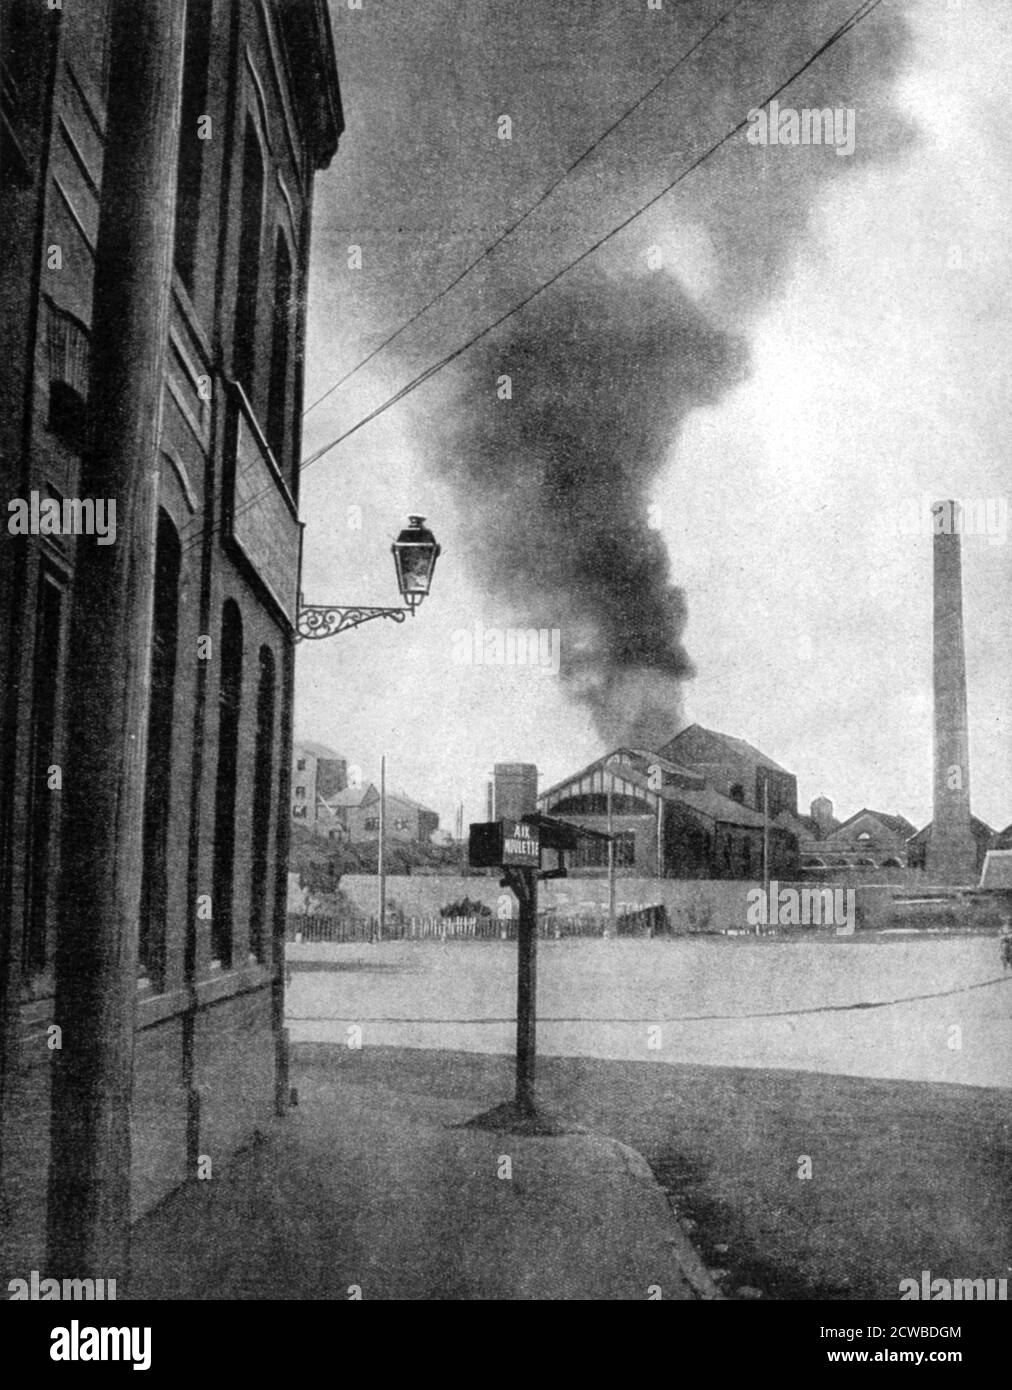 Bombardment of a mine by the Germans, Pas-de-Calais, France, 1915. A ...